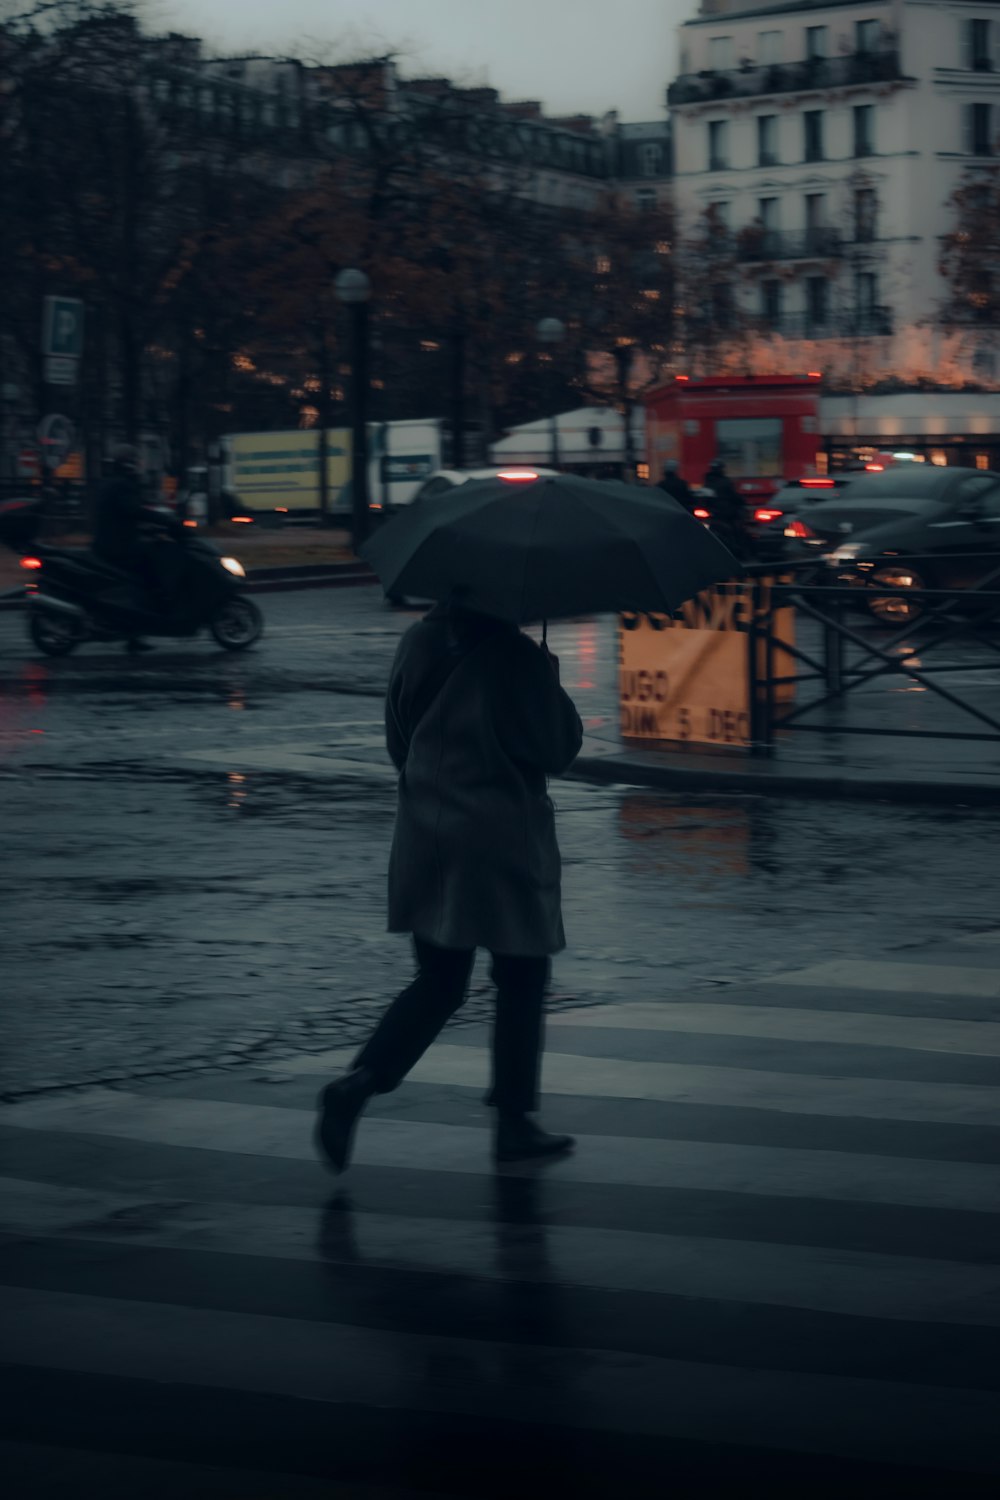 a woman walking across a street holding an umbrella